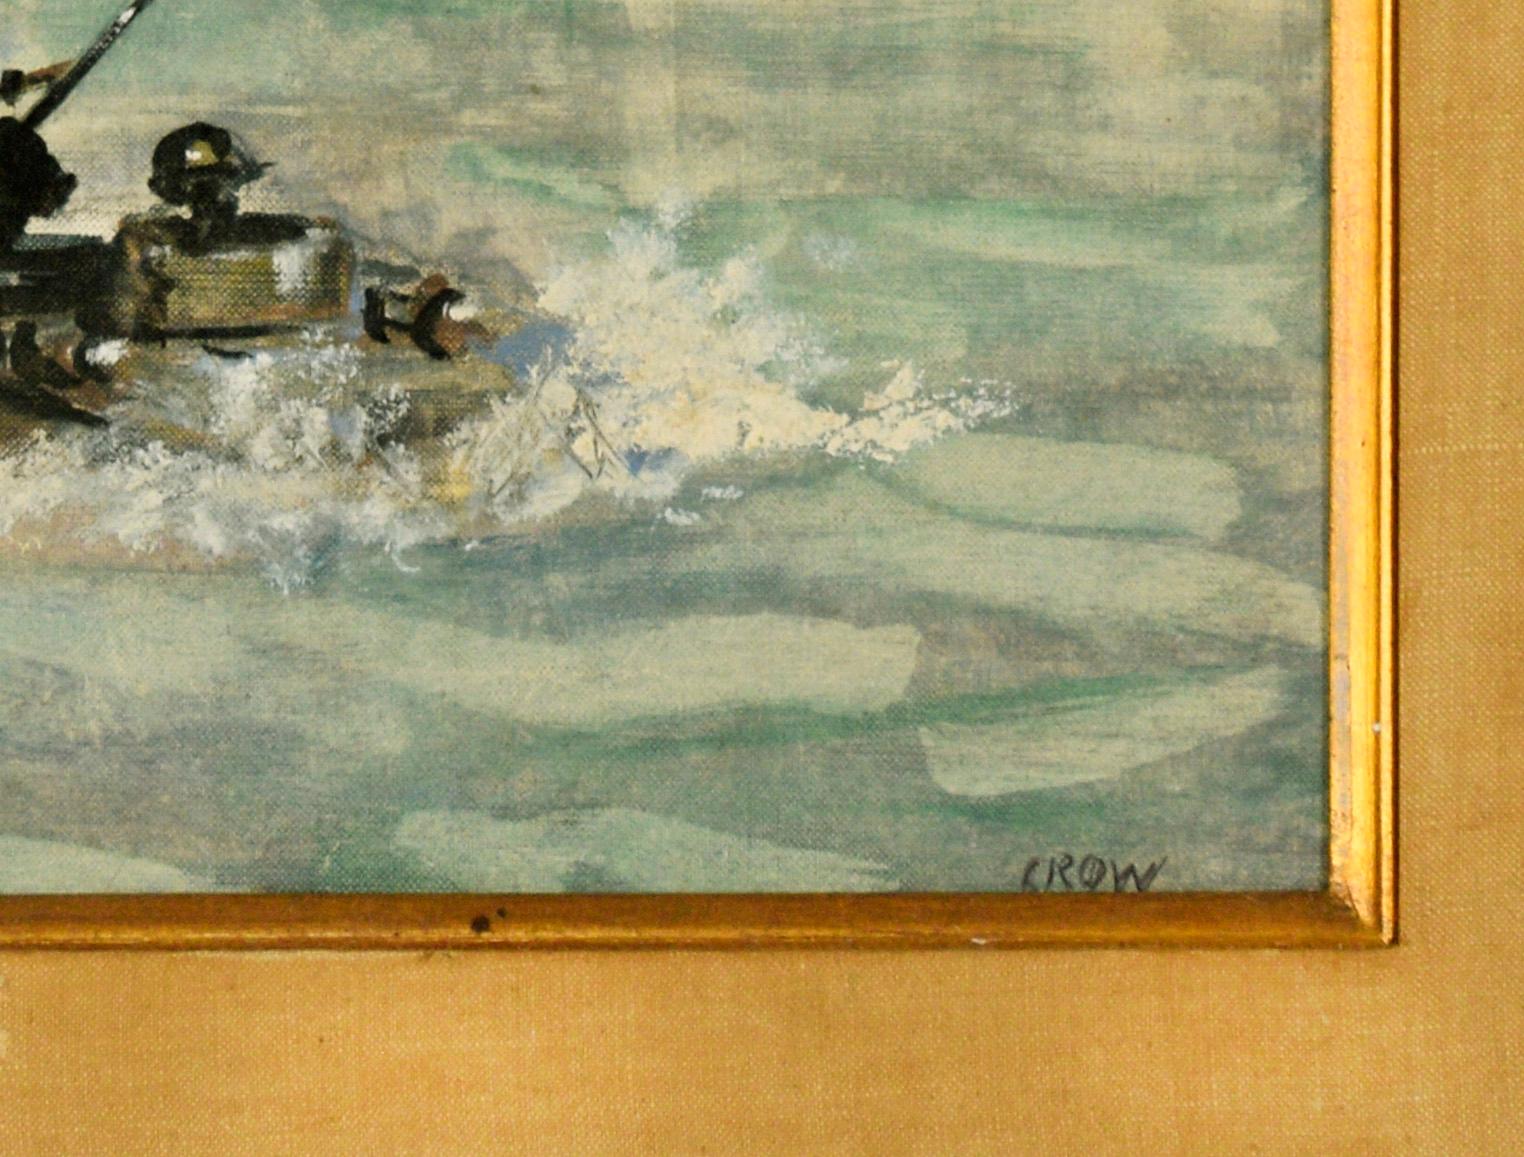 Soldats américains débarquant sur des bateaux avec des navires de guerre tirant au loin
Groupe de débarquement pendant la Seconde Guerre mondiale avec, à l'arrière-plan, des navires de la marine qui effectuent des tirs de couverture. Attribué à